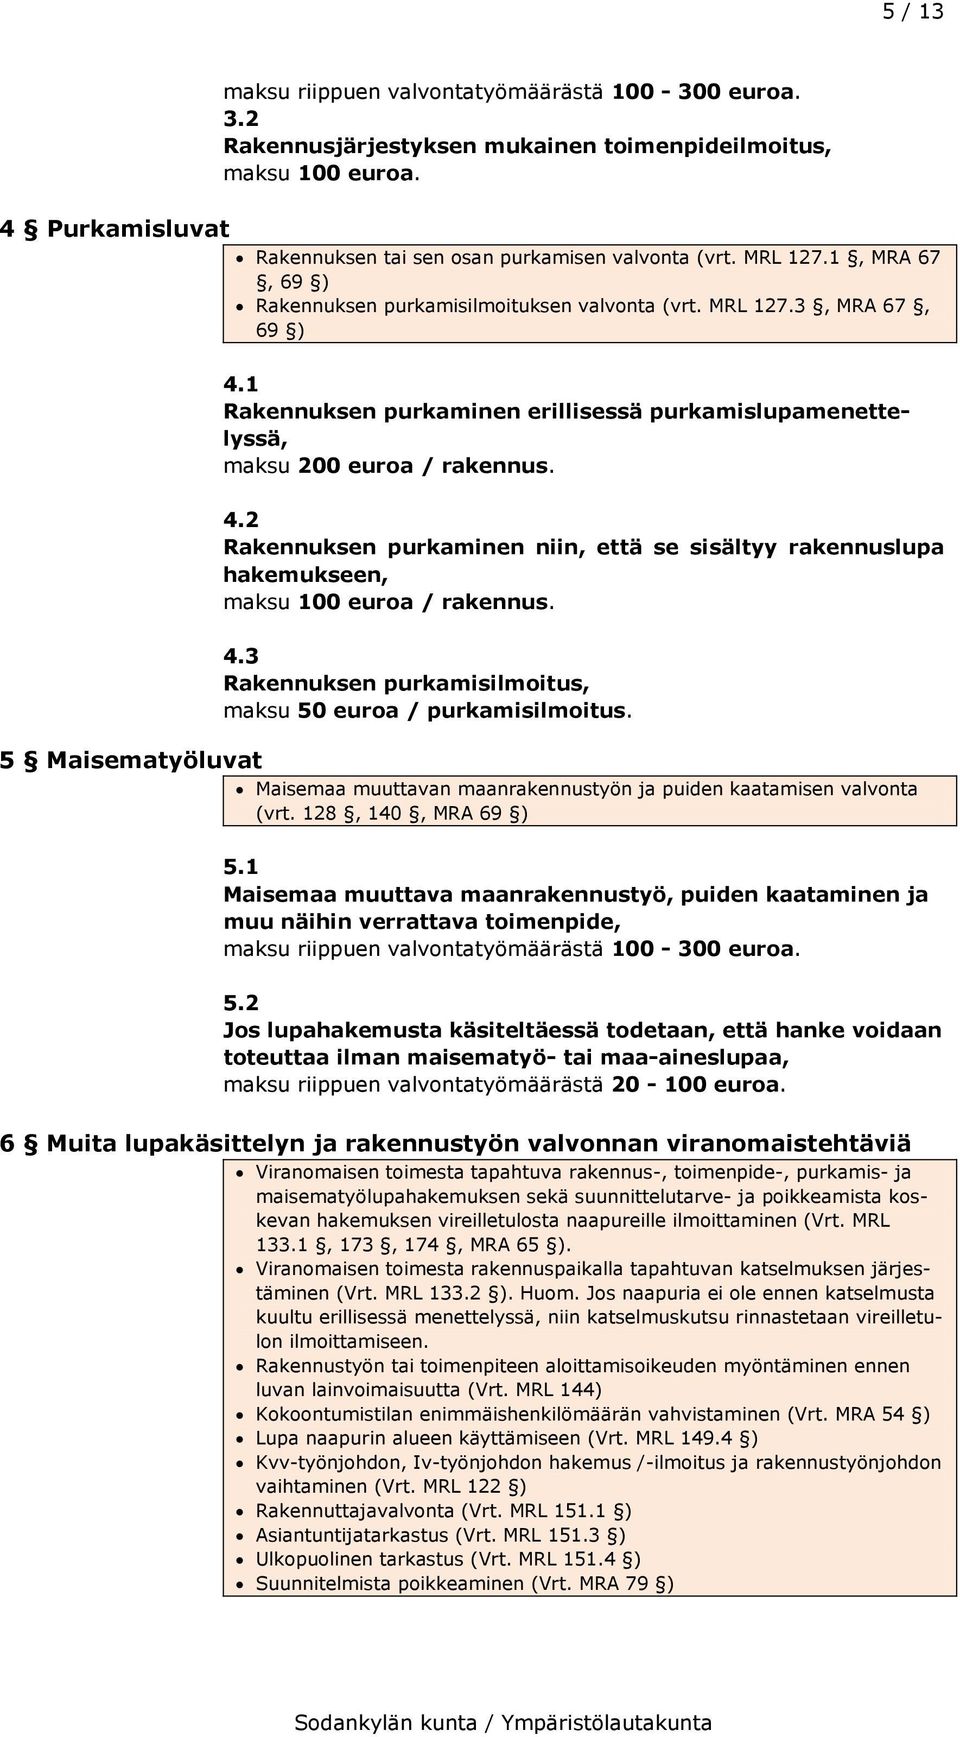 4.3 Rakennuksen purkamisilmoitus, maksu 50 euroa / purkamisilmoitus. 5 Maisematyöluvat Maisemaa muuttavan maanrakennustyön ja puiden kaatamisen valvonta (vrt. 128, 140, MRA 69 ) 5.